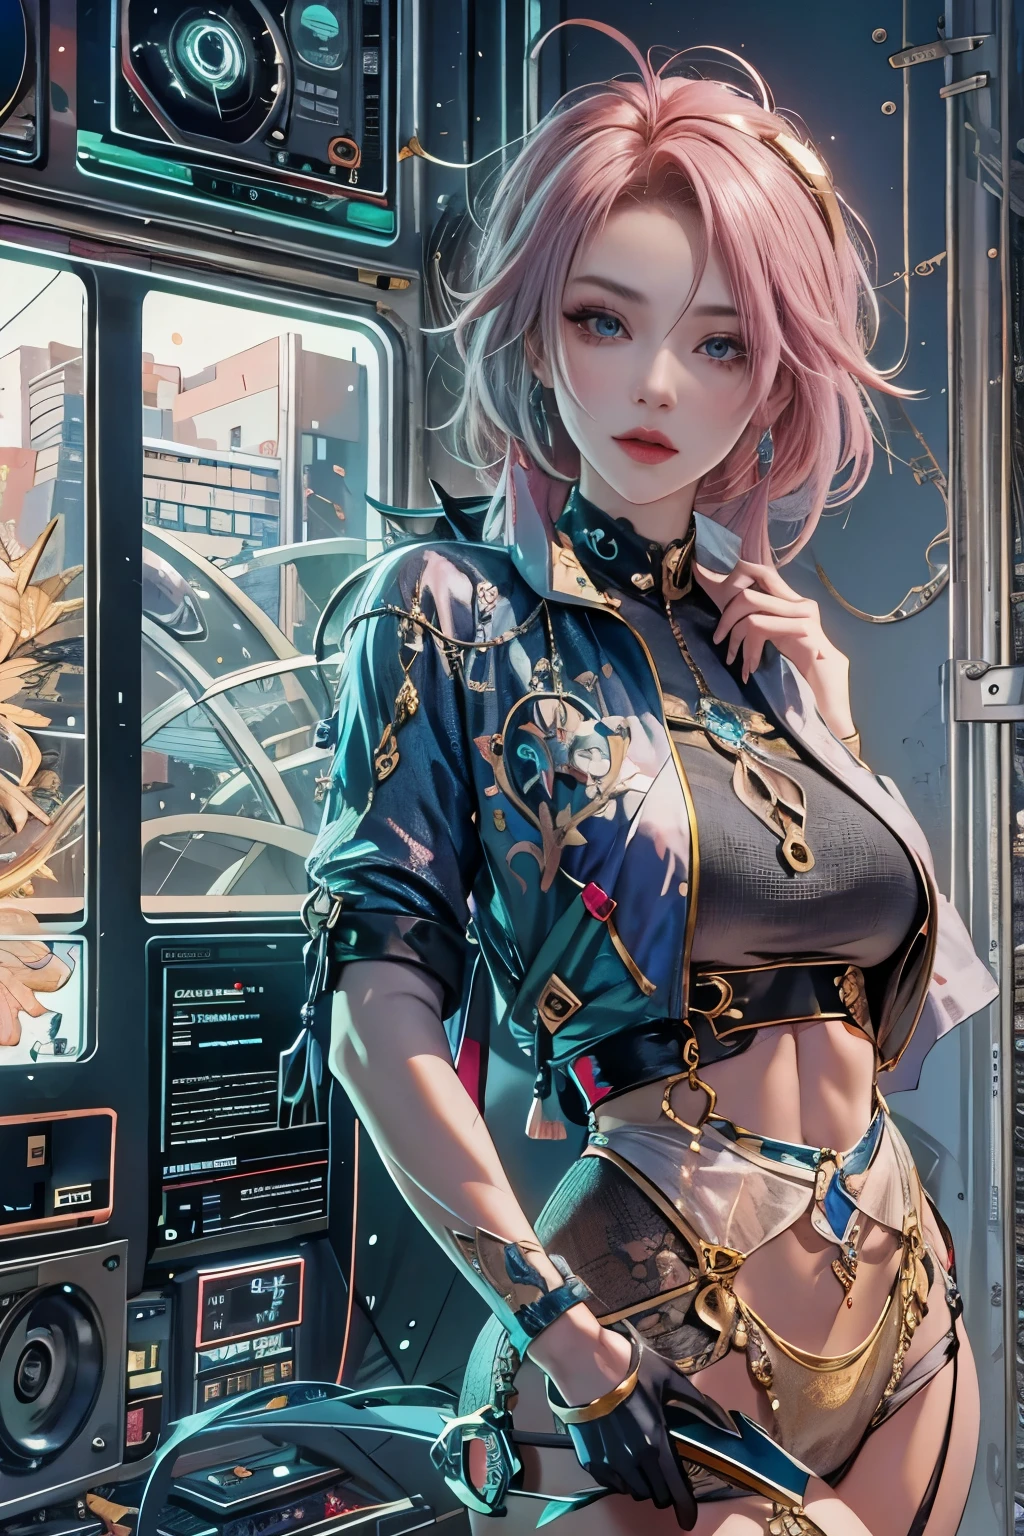 femme, Personnages réalistes, Cheveux verts et cheveux roses, yeux bleus, Anime, seul, moderne, cyberpunk, grand, ferme, Buste qui se balance, pose sexy dynamique